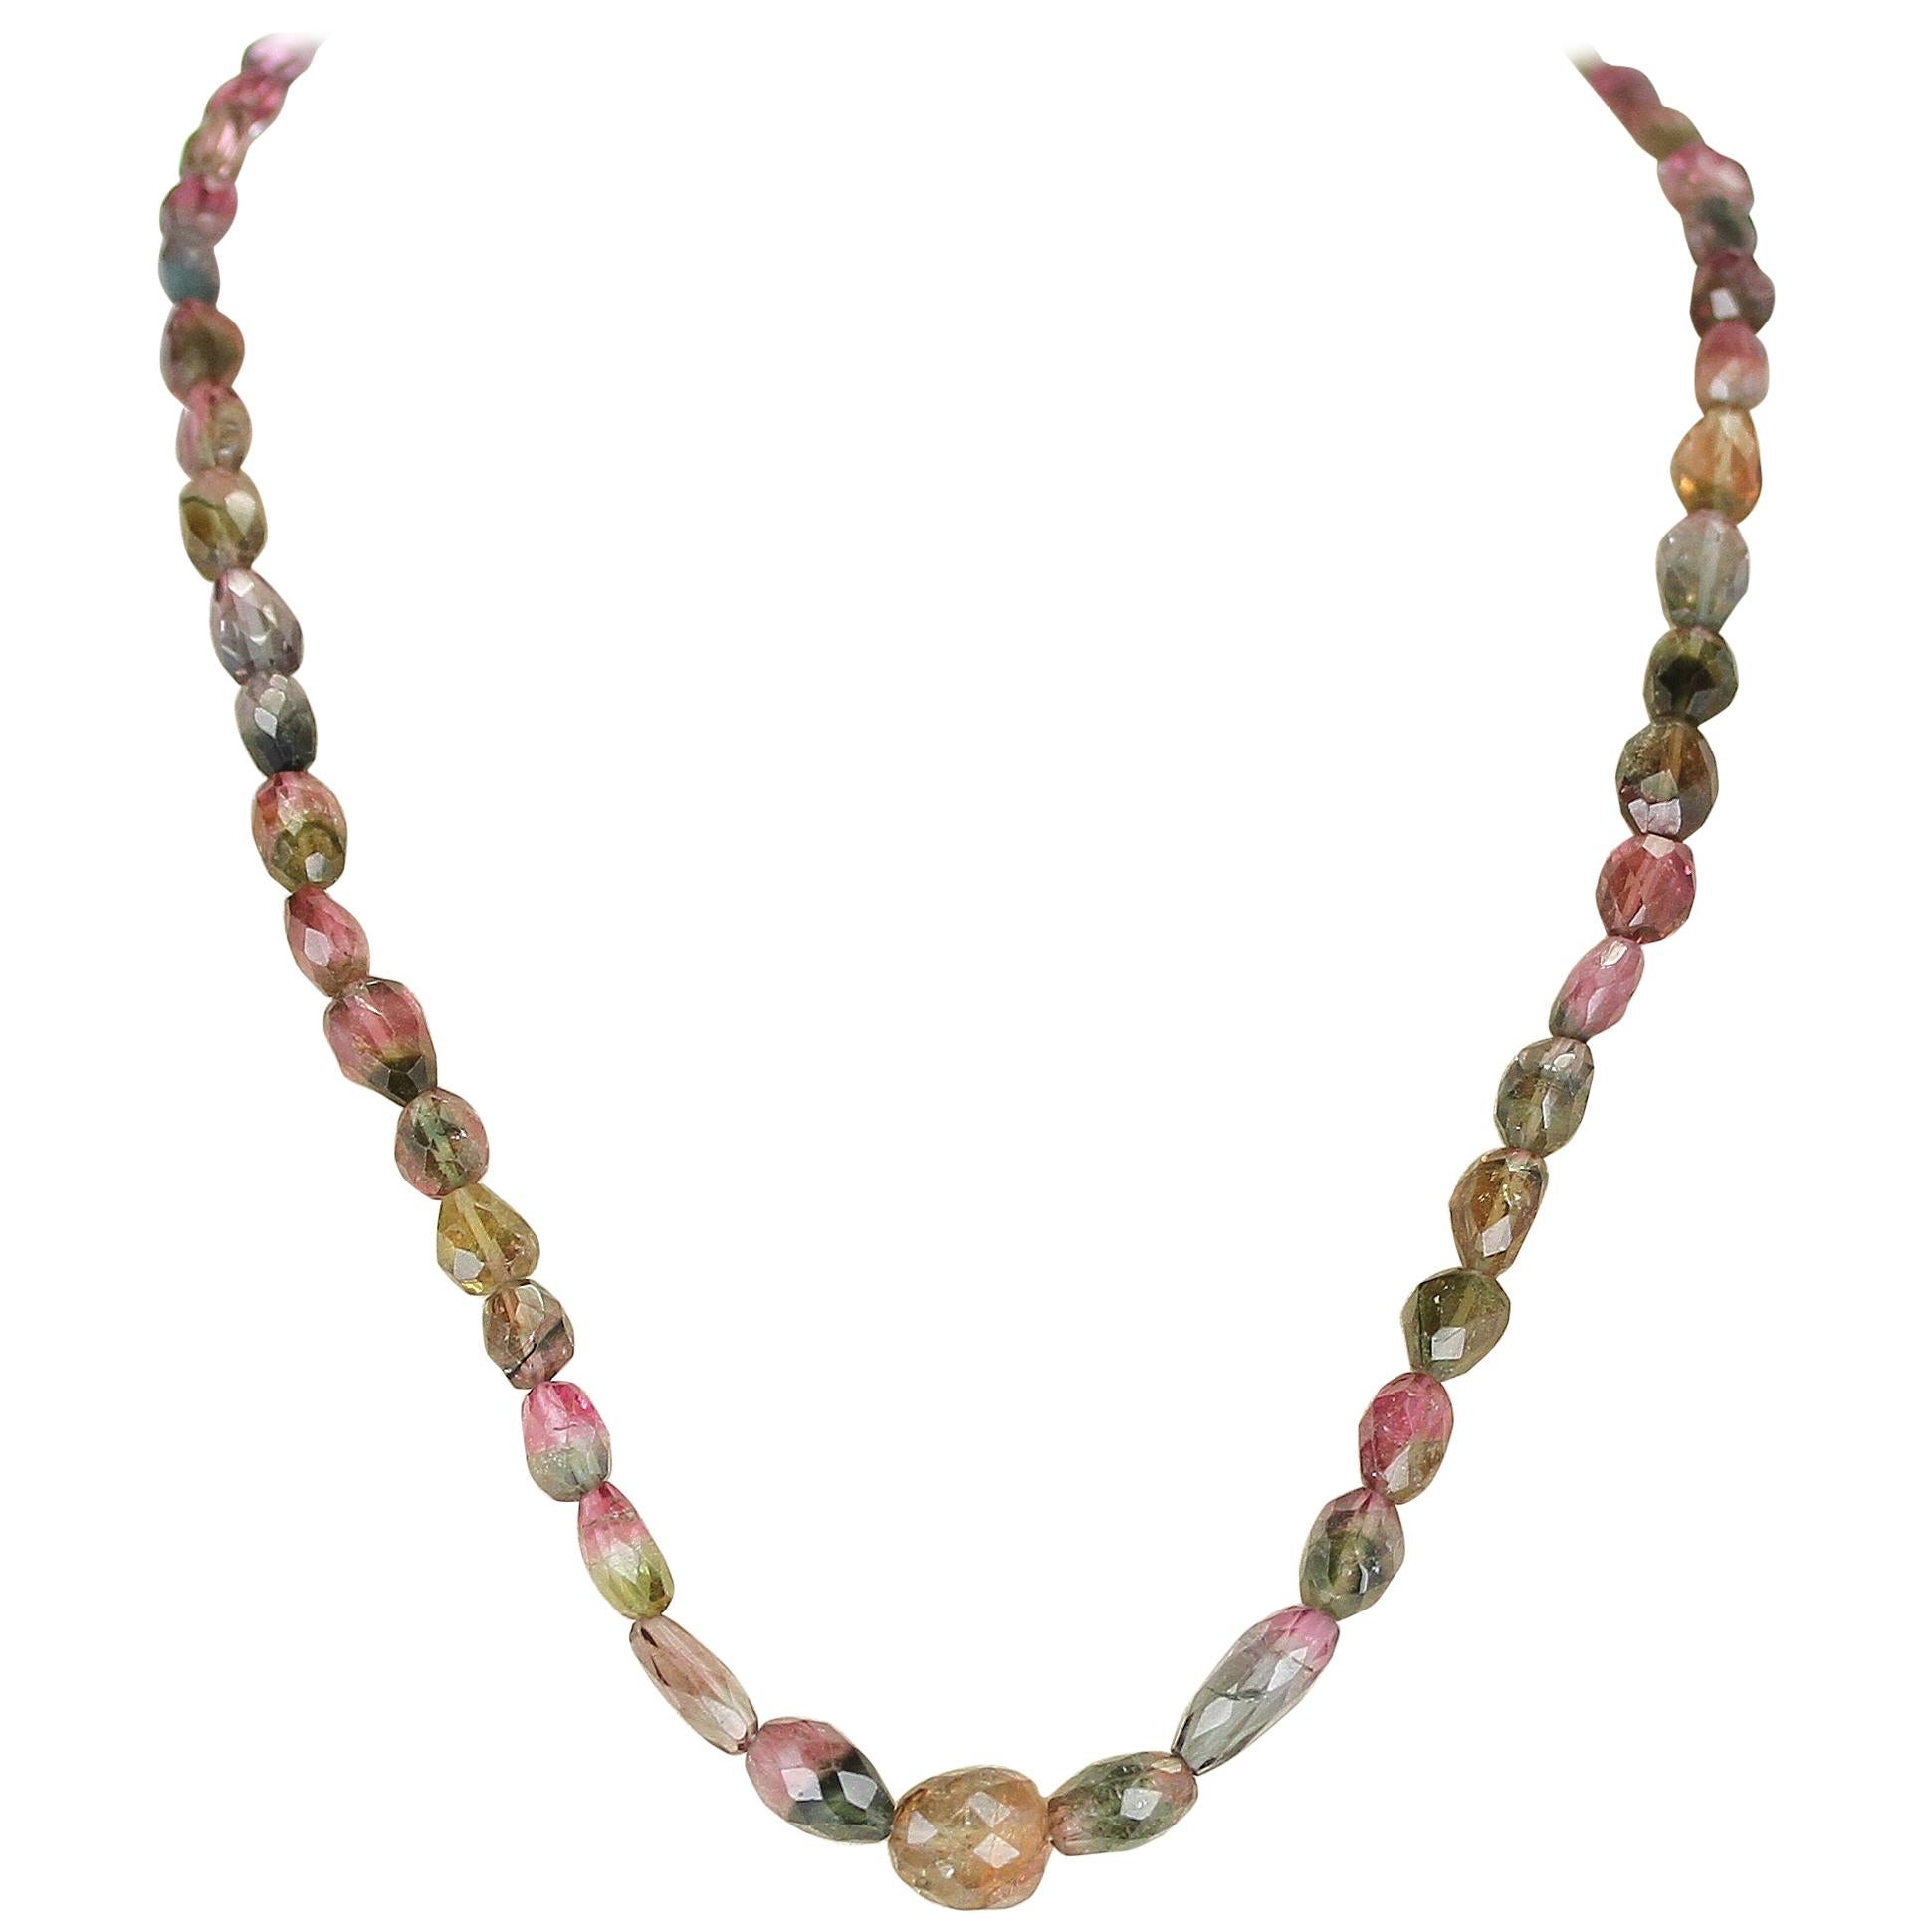 Echte und natürliche Wassermelone Turmalin getrommelt facettierte Perlen Halskette